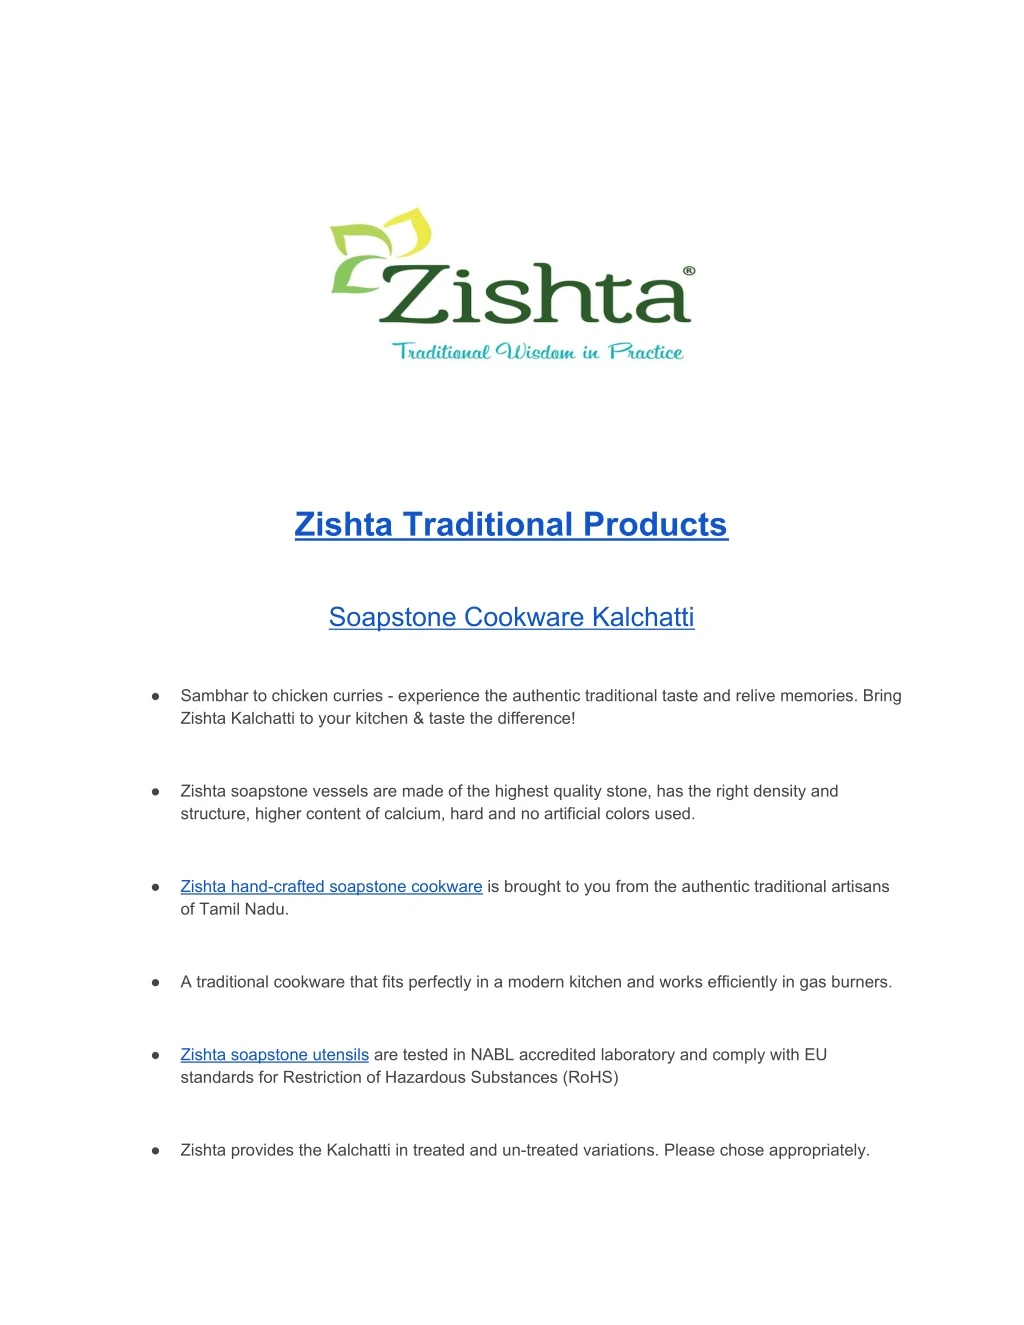 zishta traditional products